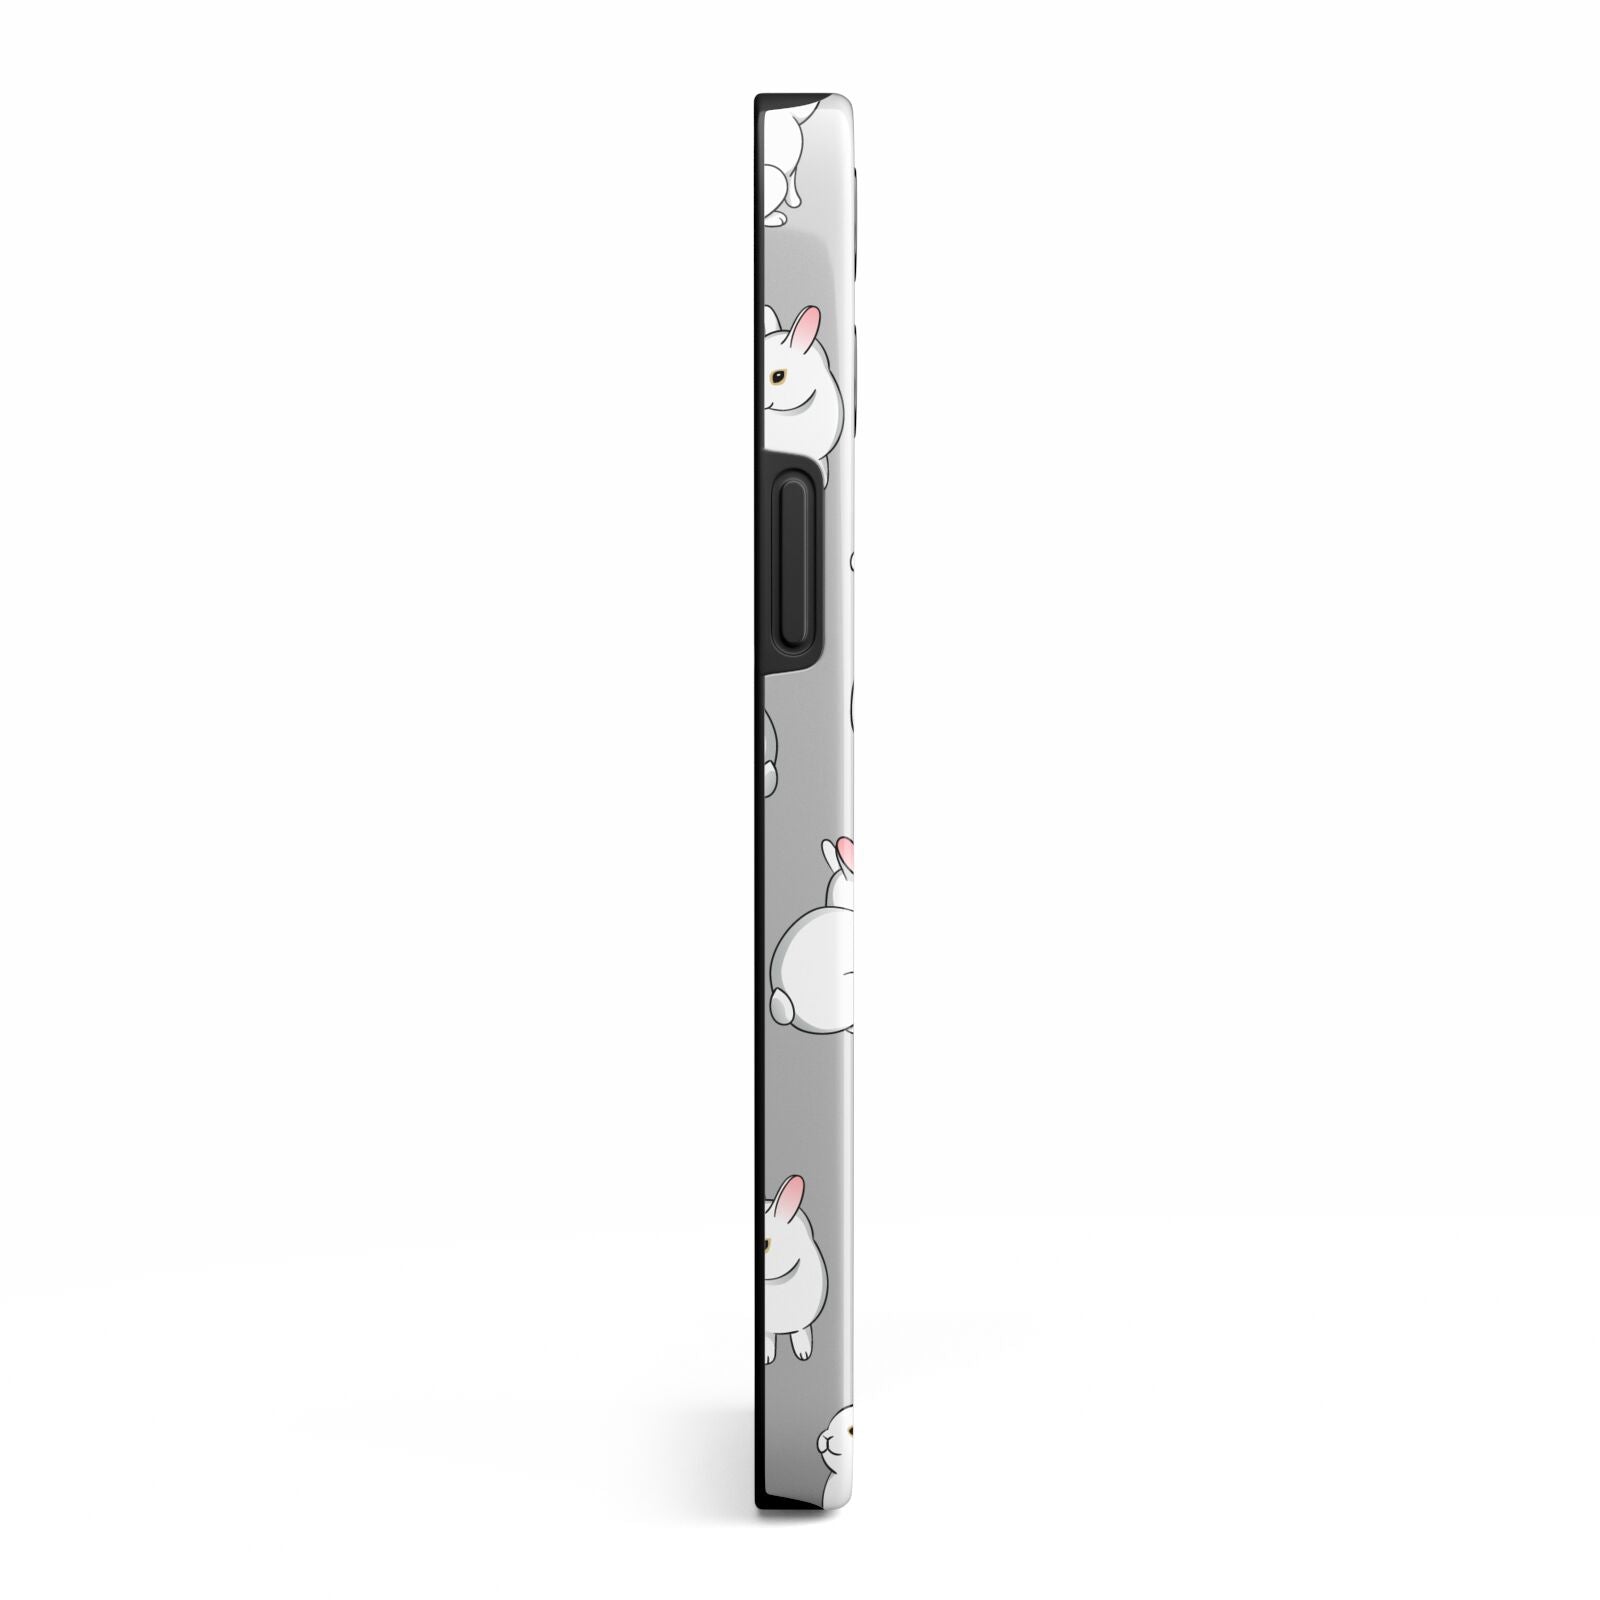 Bunny Rabbit iPhone 13 Pro Max Side Image 3D Tough Case